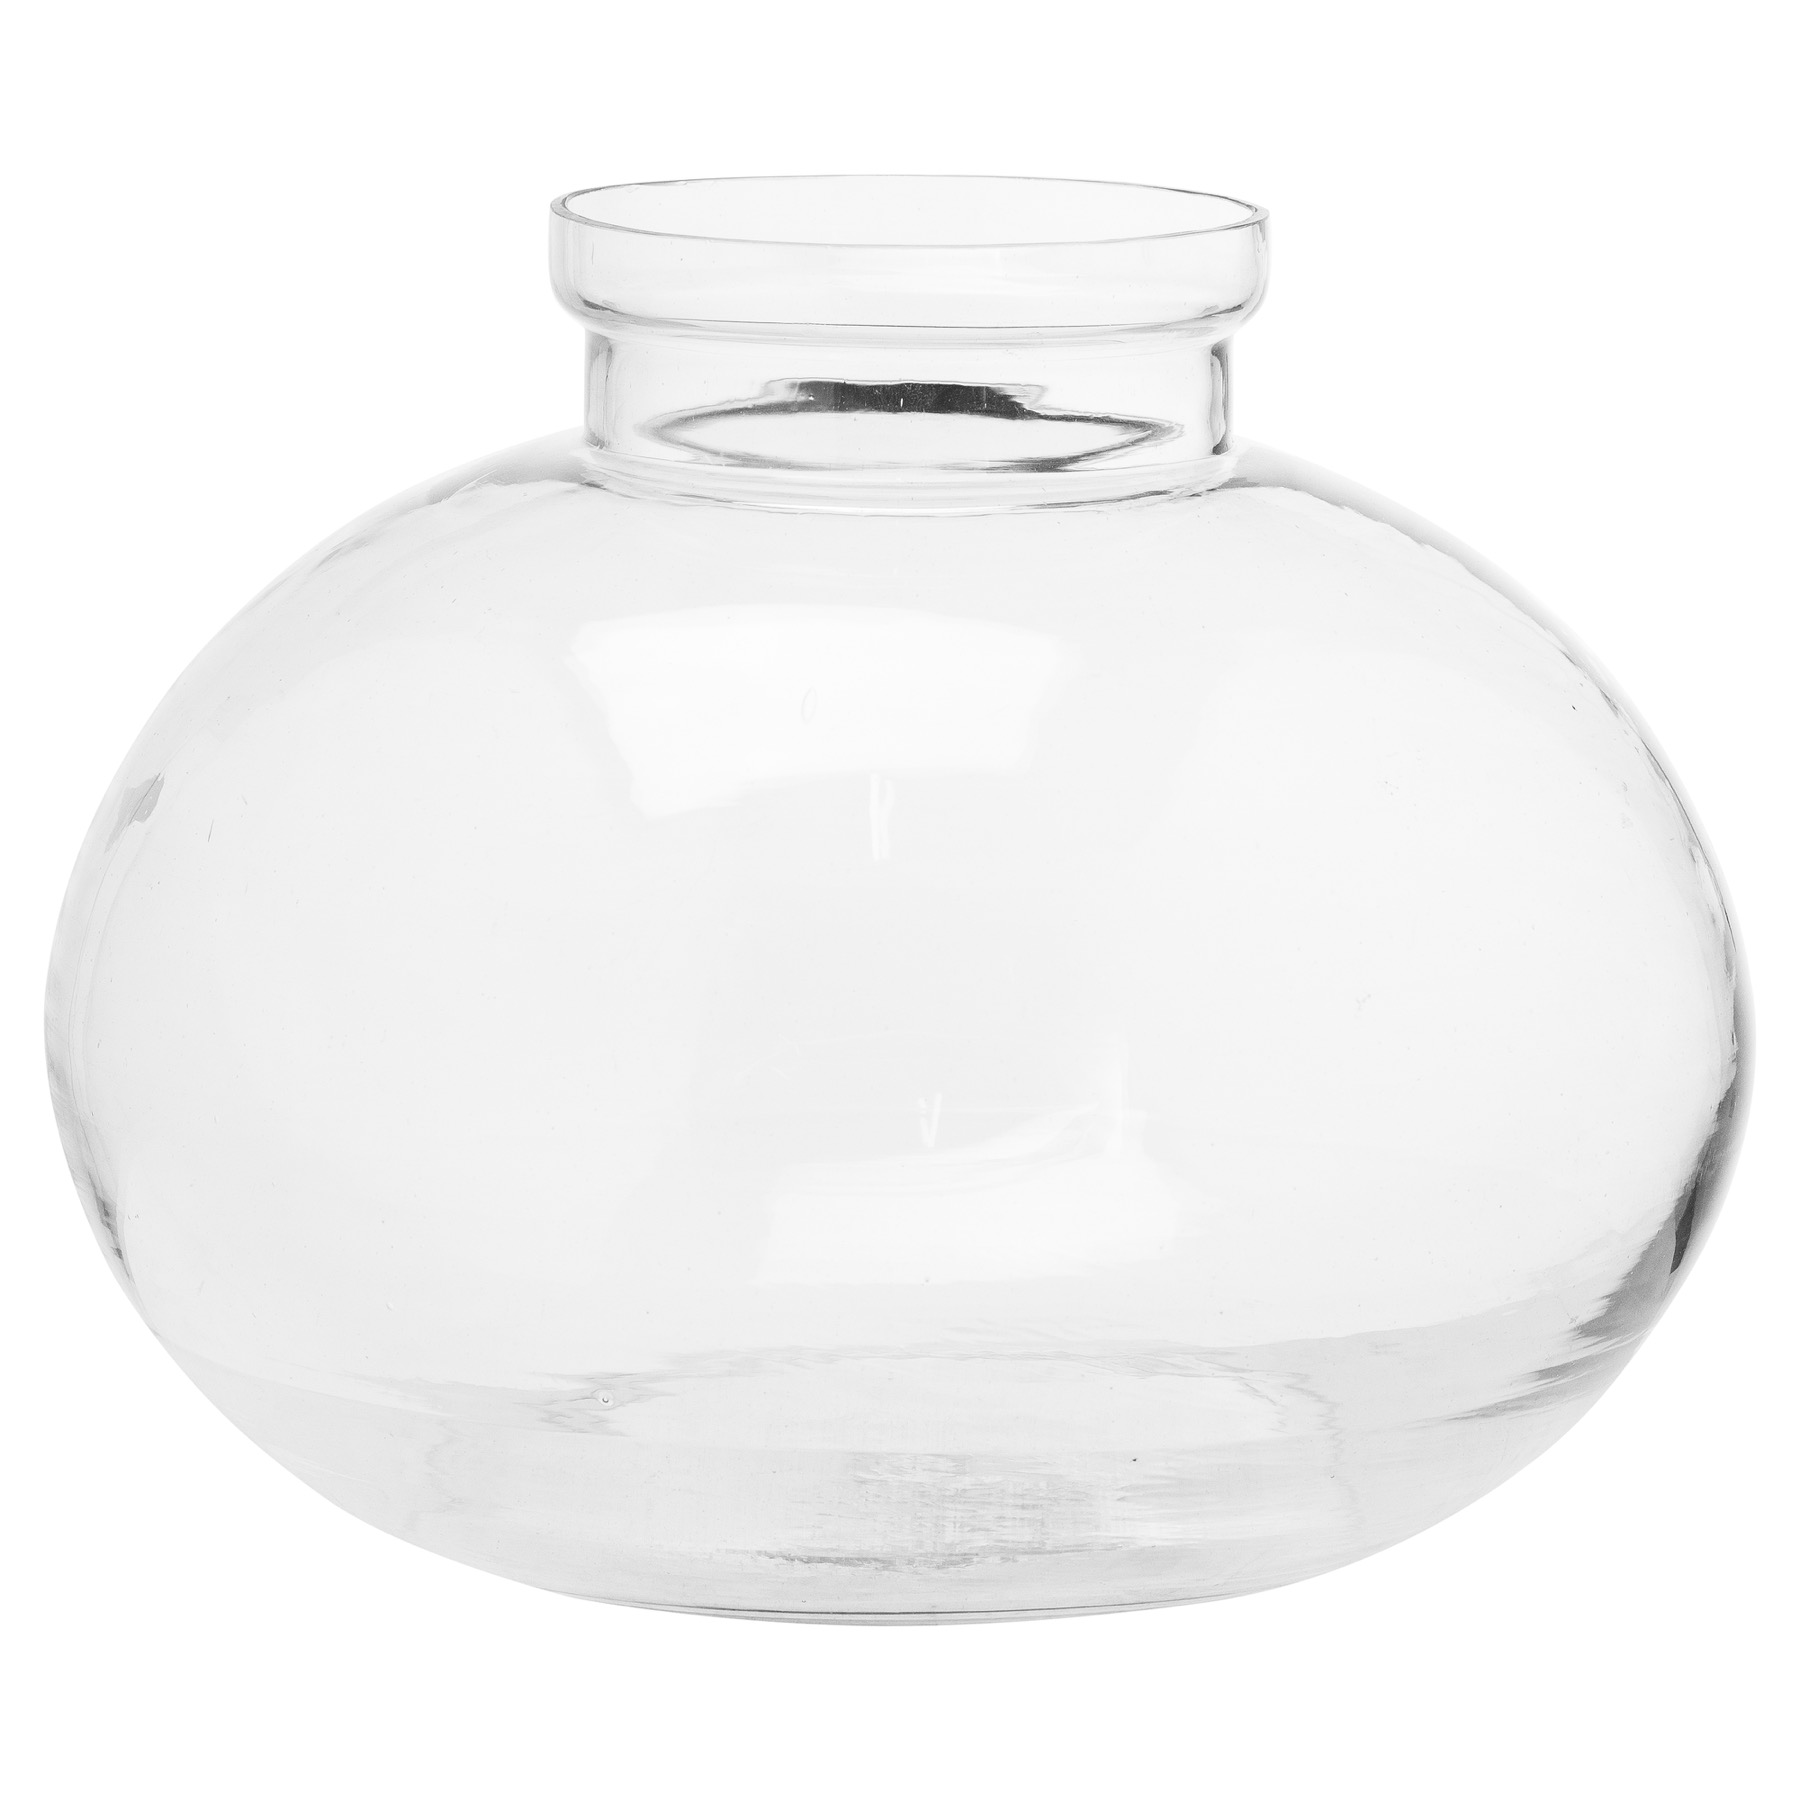 Large Fish Bowl Glass Vase - Image 1